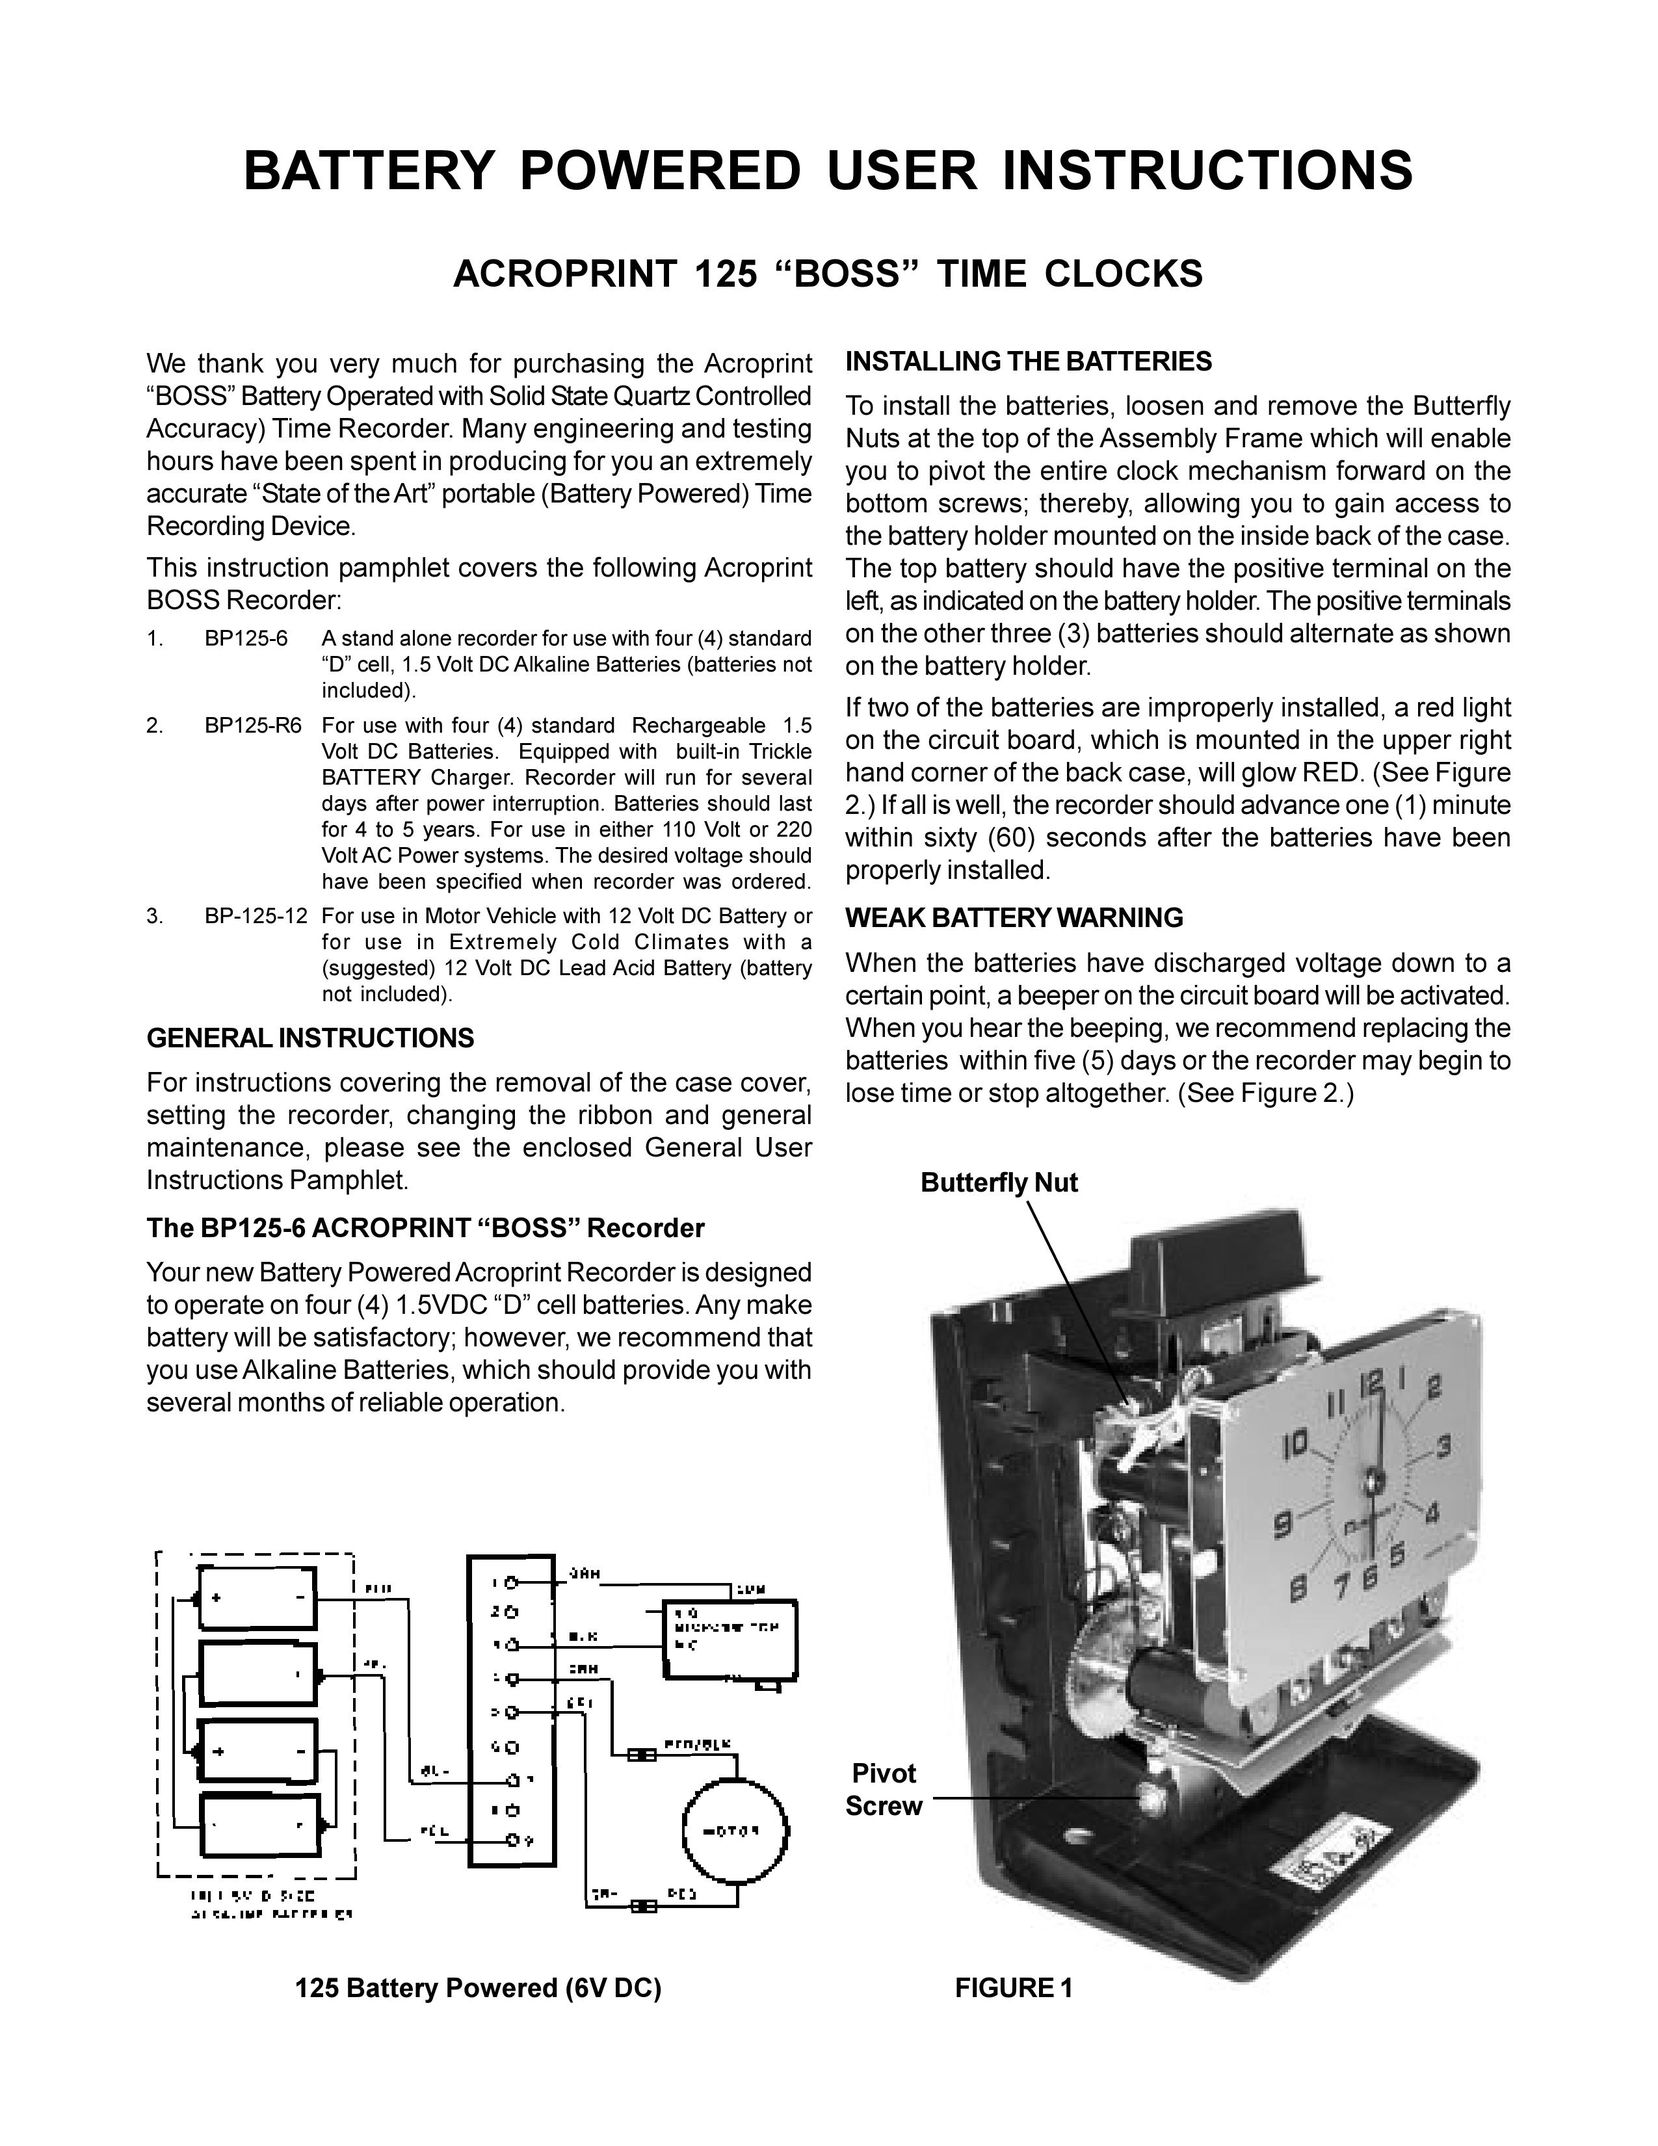 Acroprint BP125-6 Time Clock User Manual